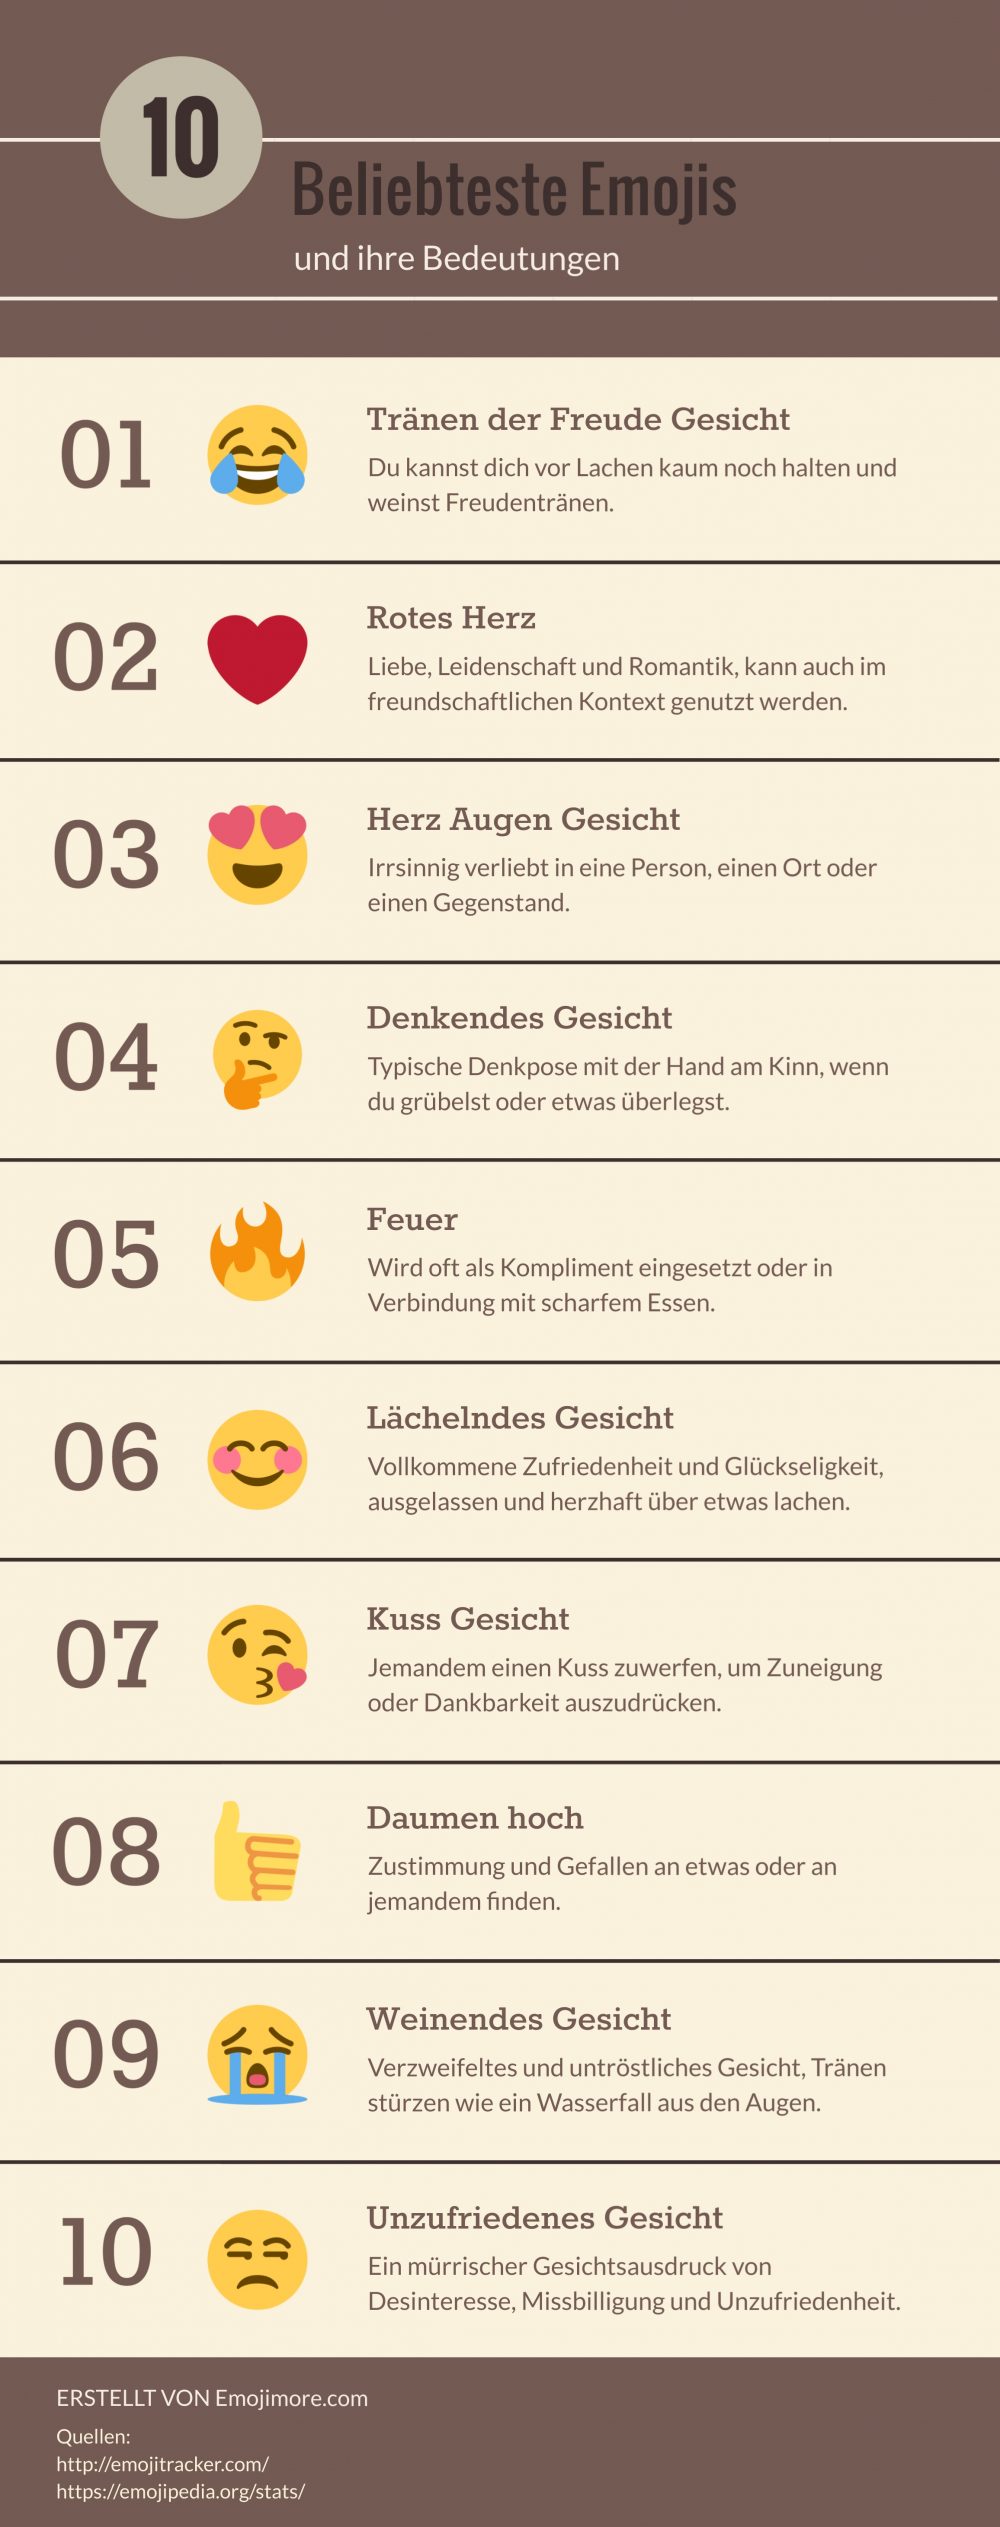 Welches Emoji wird am häufigsten verwendet?